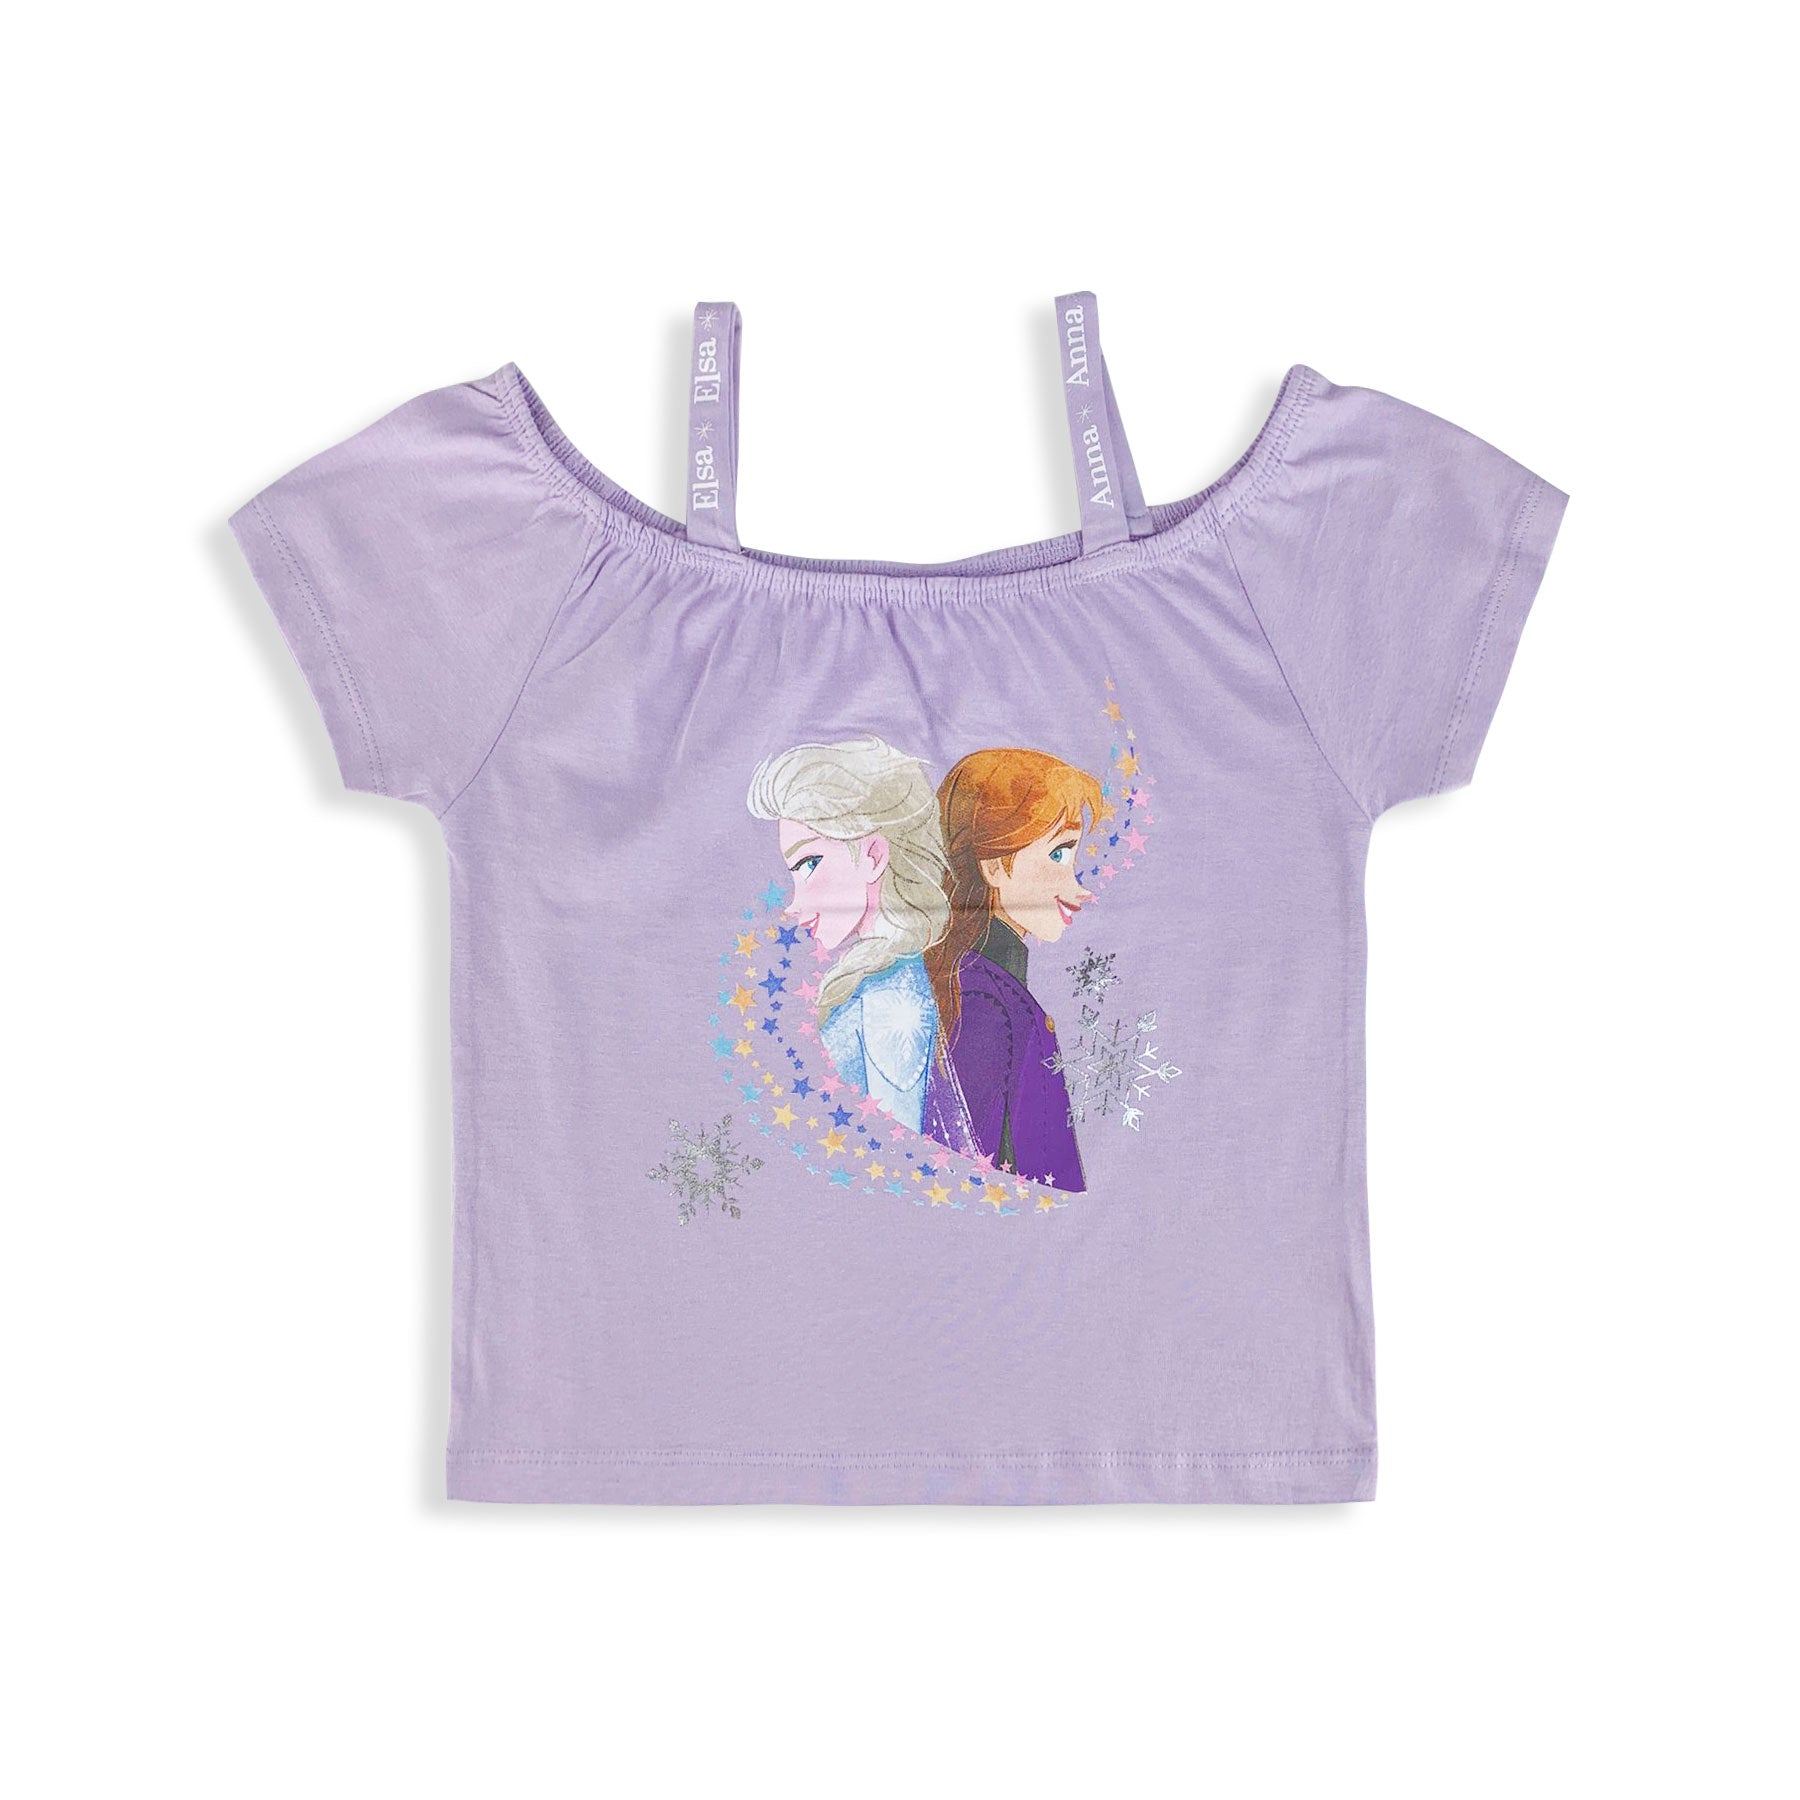 Maglia Disney Frozen maglietta con bretelle maglia bimba cotone bambina 5429